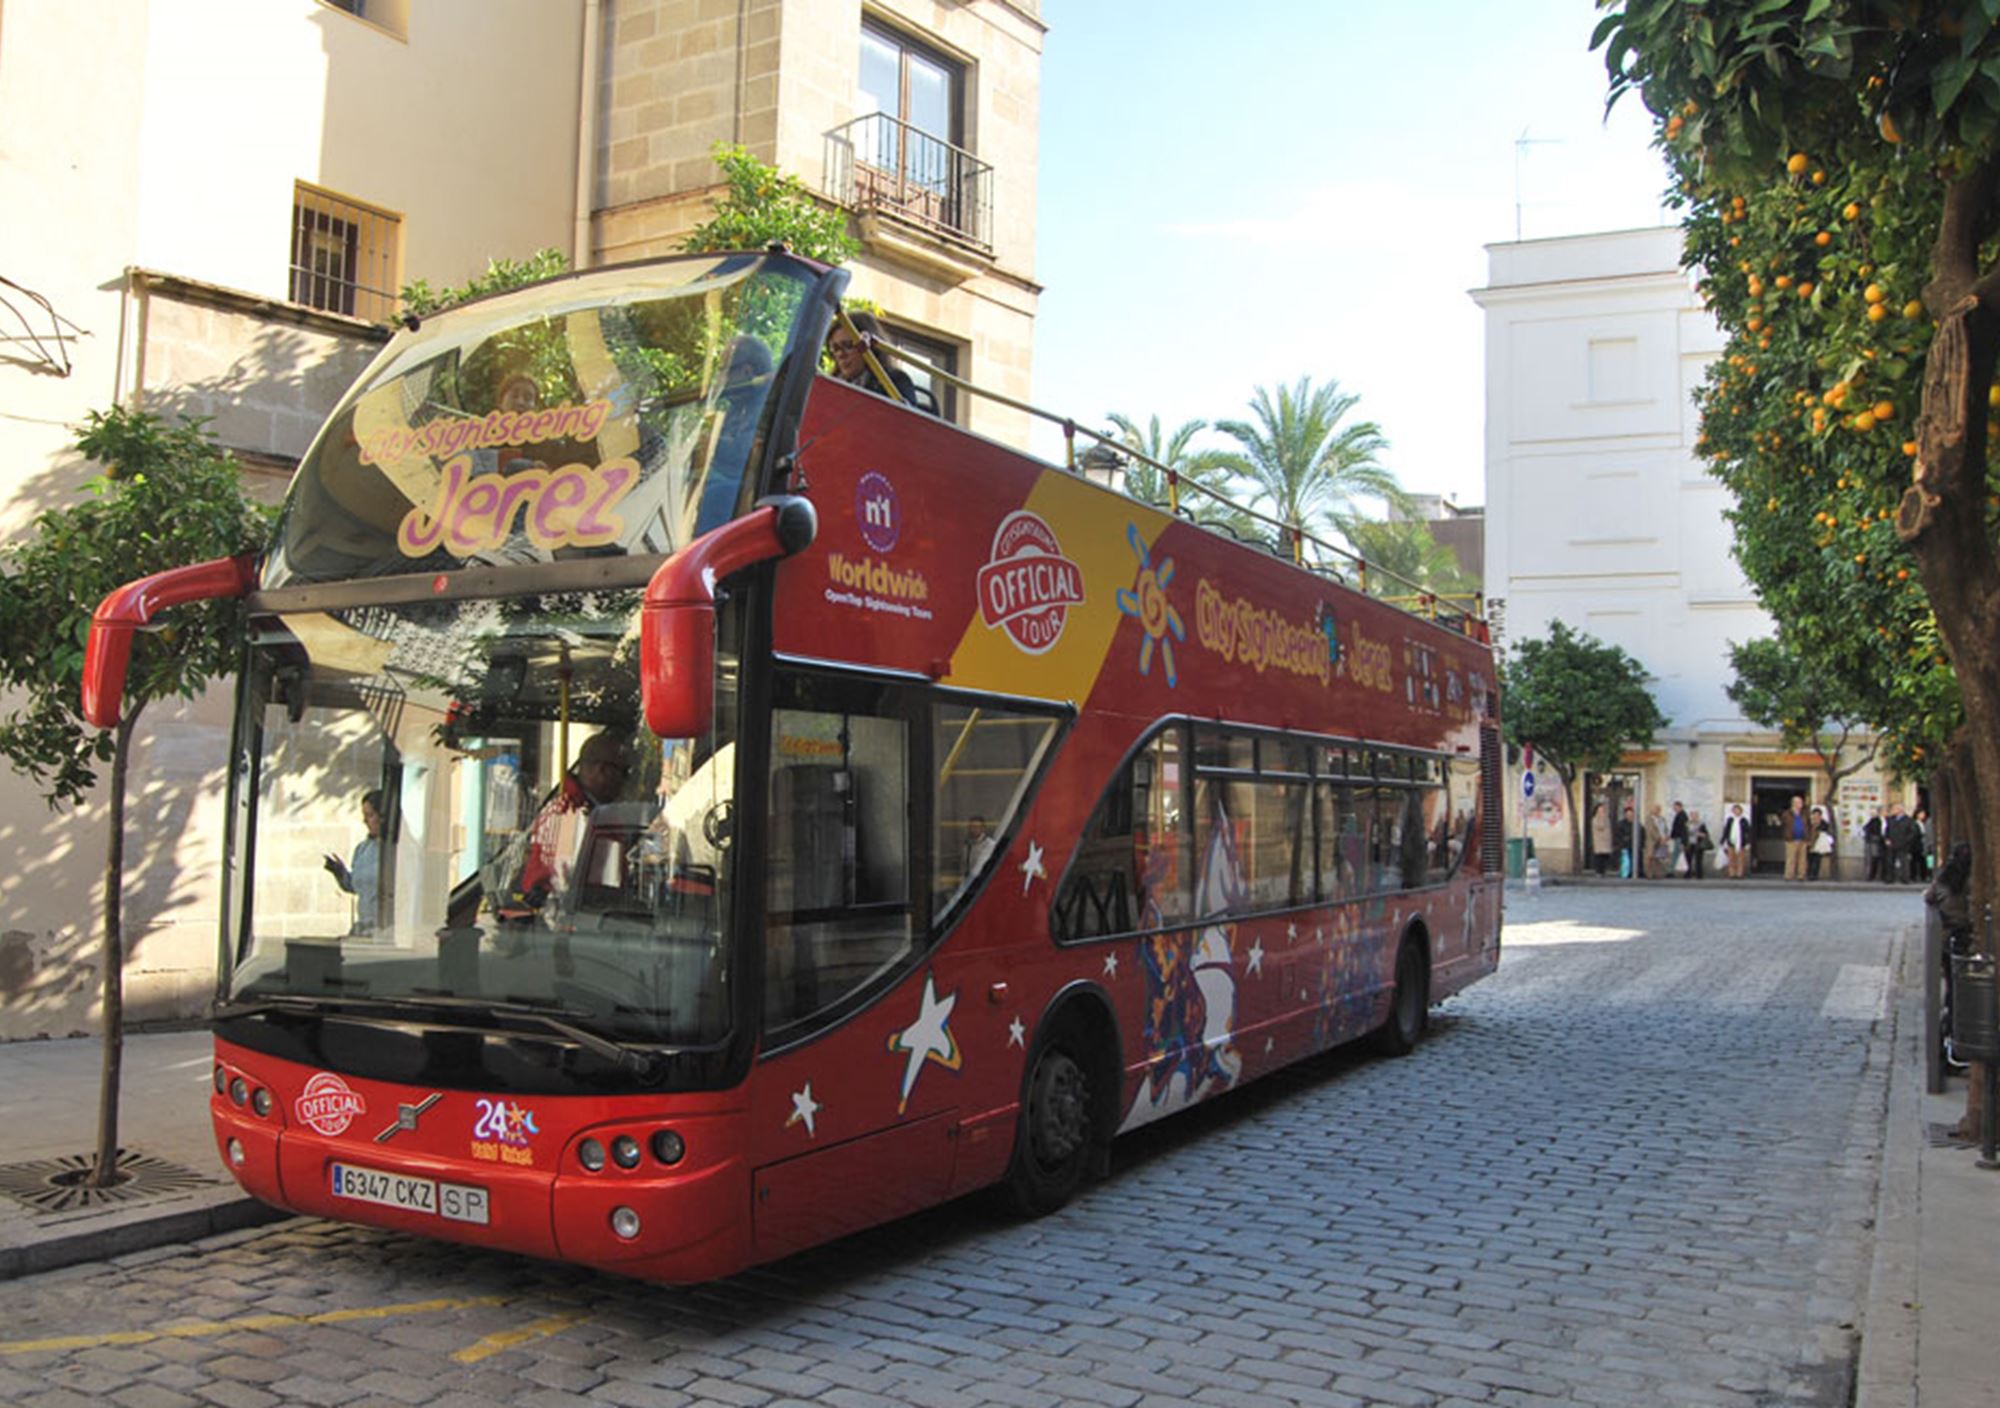 reservieren kaufen buchung tickets besucht Touren Fahrkarte karte karten Eintrittskarten Touristikbus City Sightseeing Jerez de la Frontera